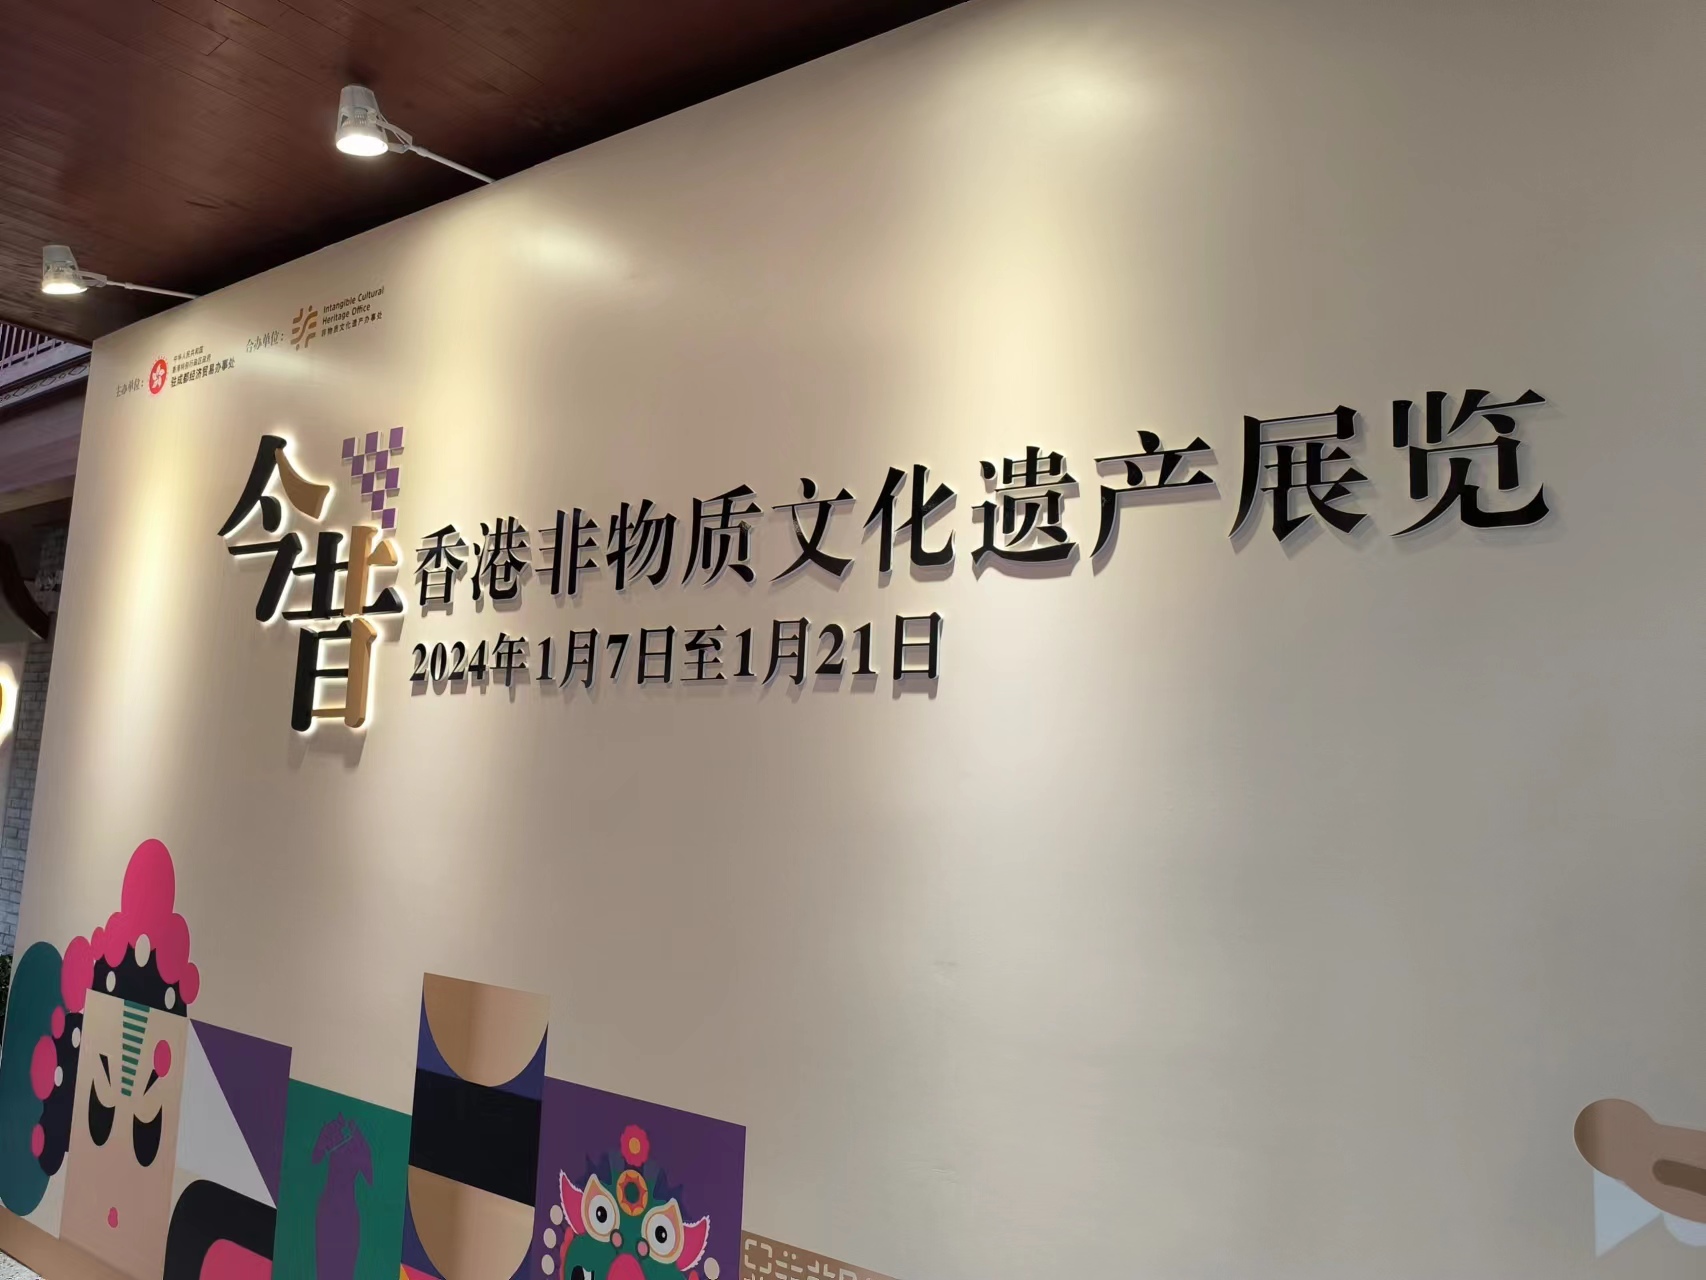 川港兩地藝術文化交流  「今昔—香港非物質文化遺產展覽」在成都開幕